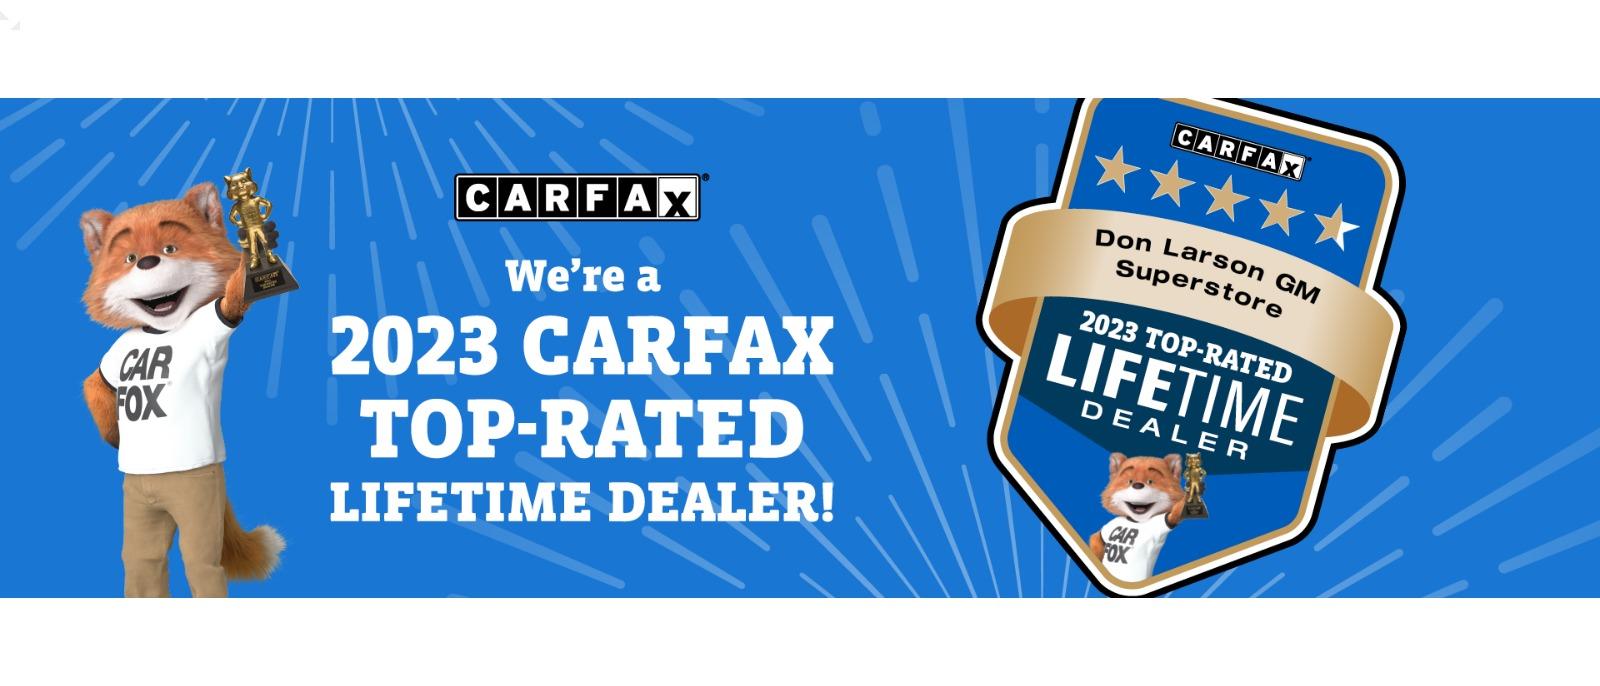 Carfax Top-Rated Lifetime Dealer 2023 Award